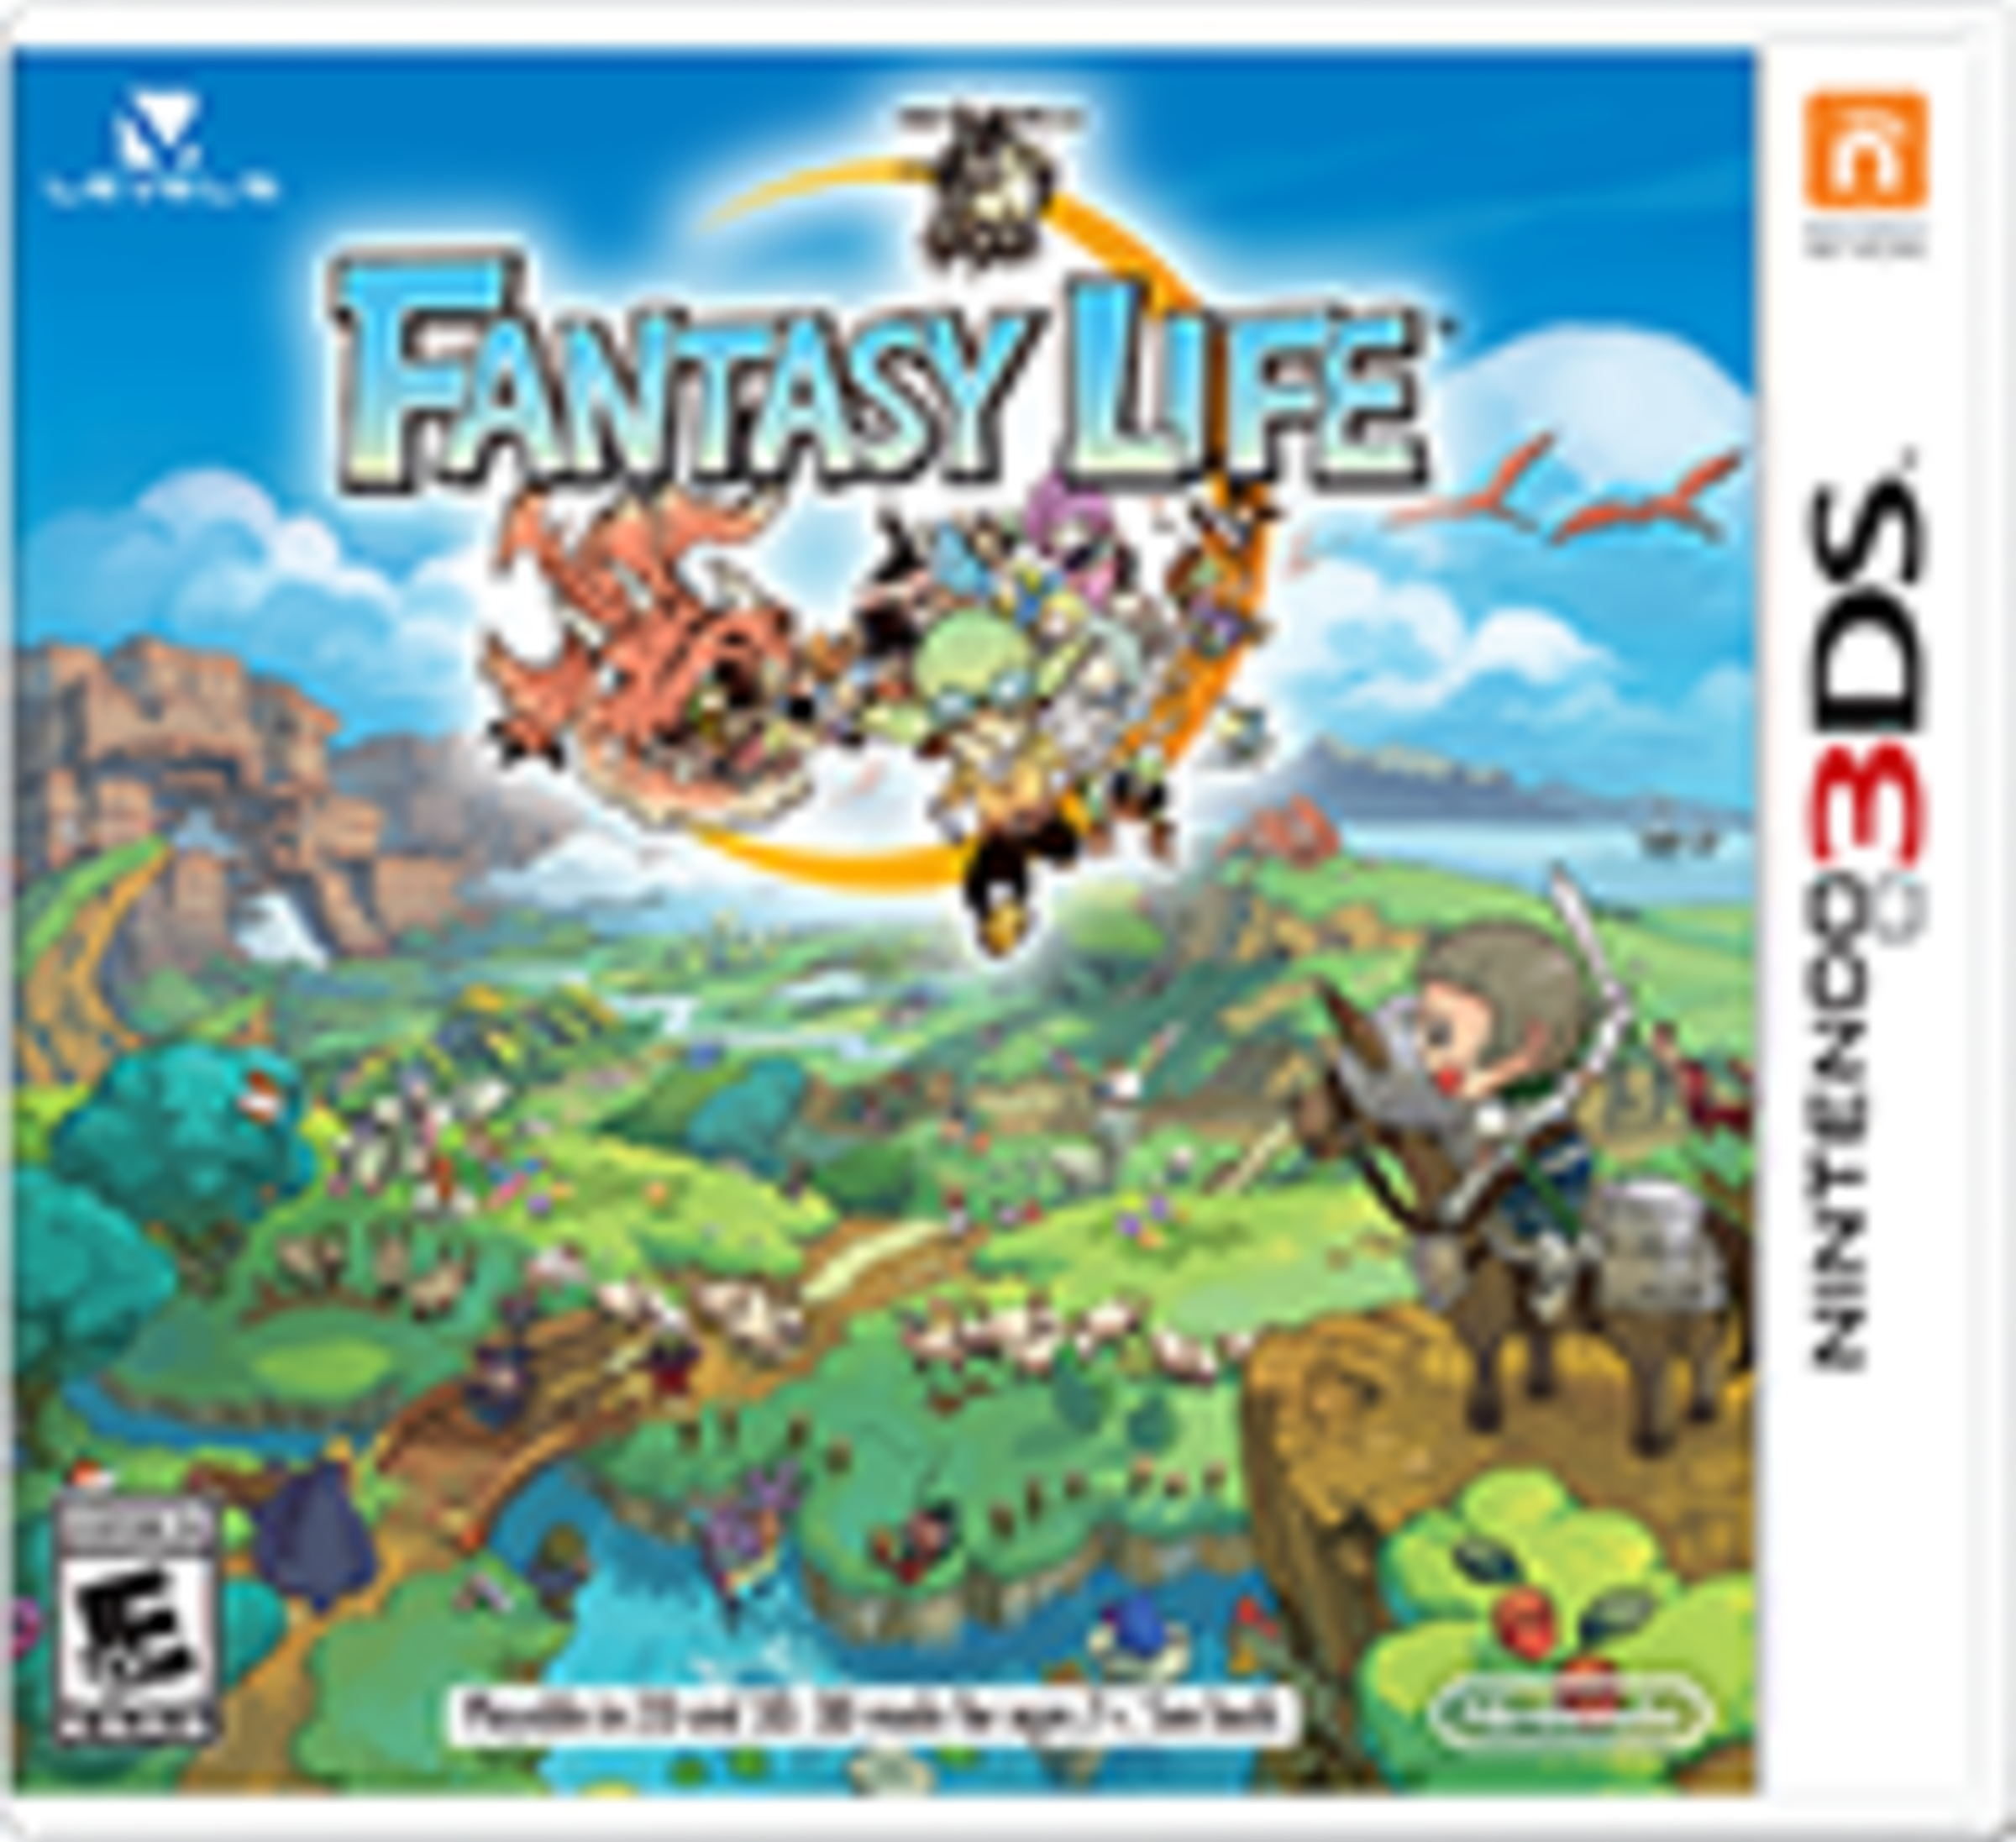 Fantasy Life for Nintendo 3DS - Nintendo Official Site